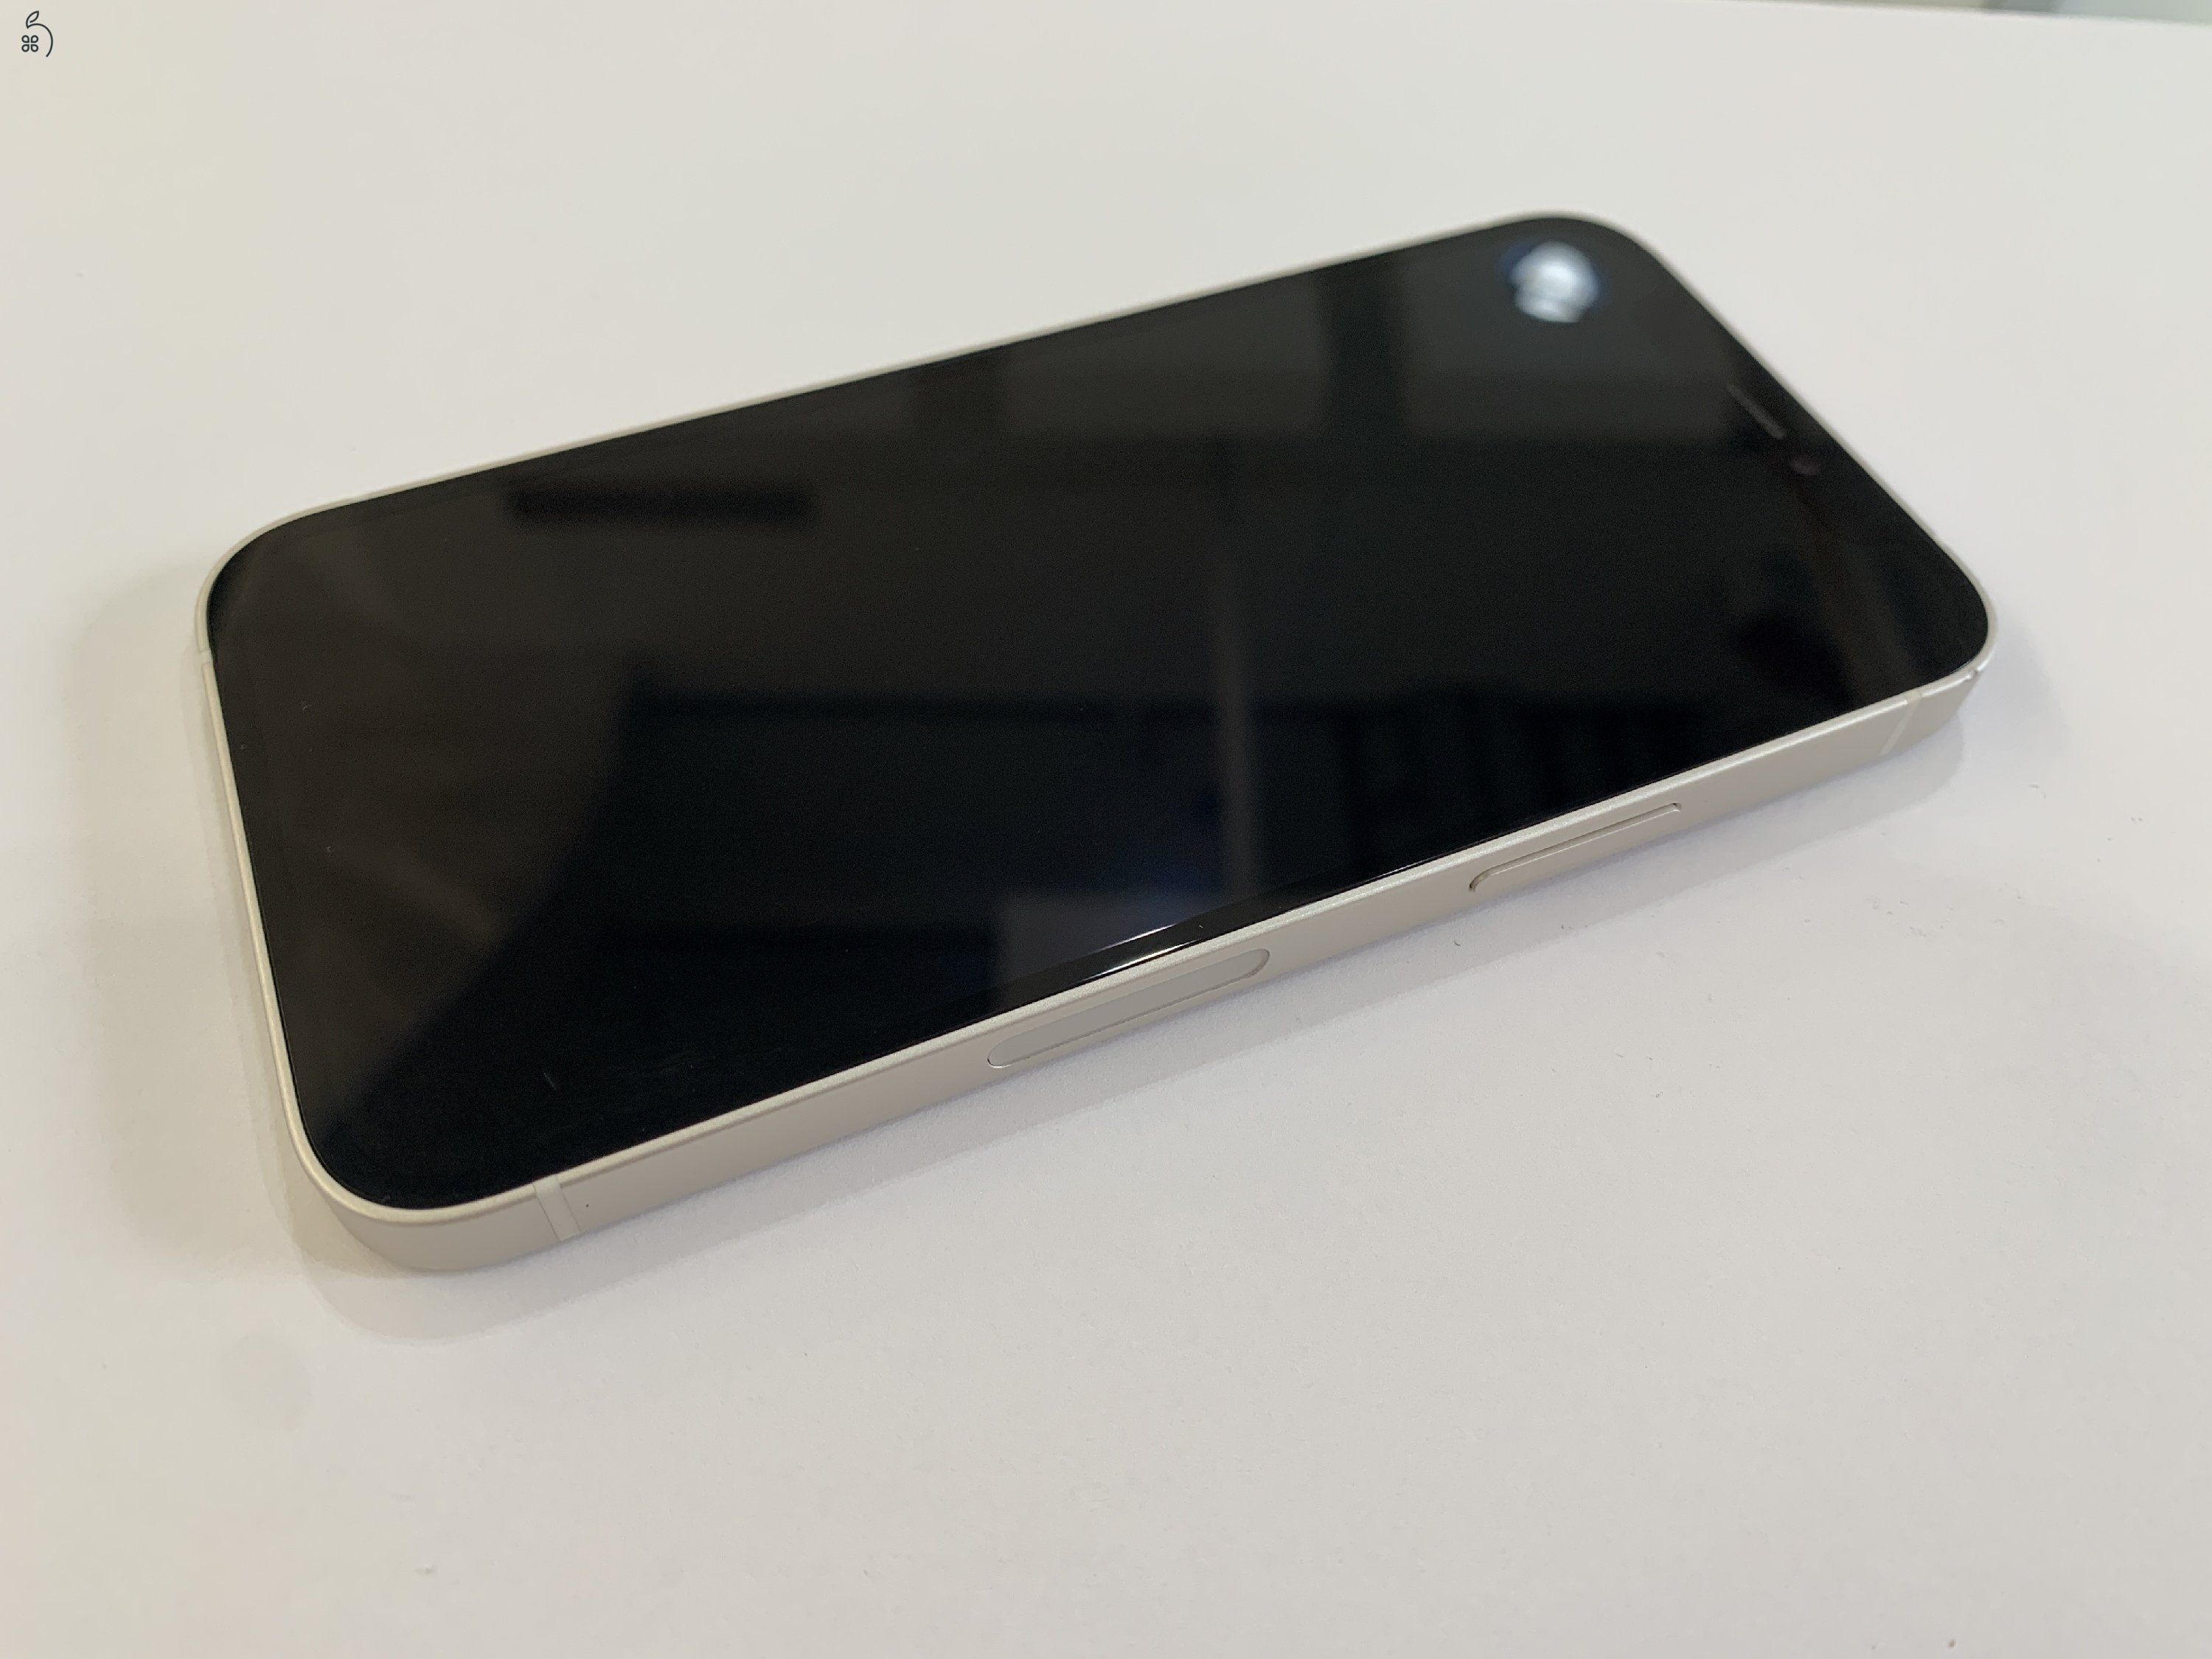 Kiváló állapotú Apple iPhone 12 Mini 64GB, fehér színben, kártyafüggetlen, 12 hónap garanciával!